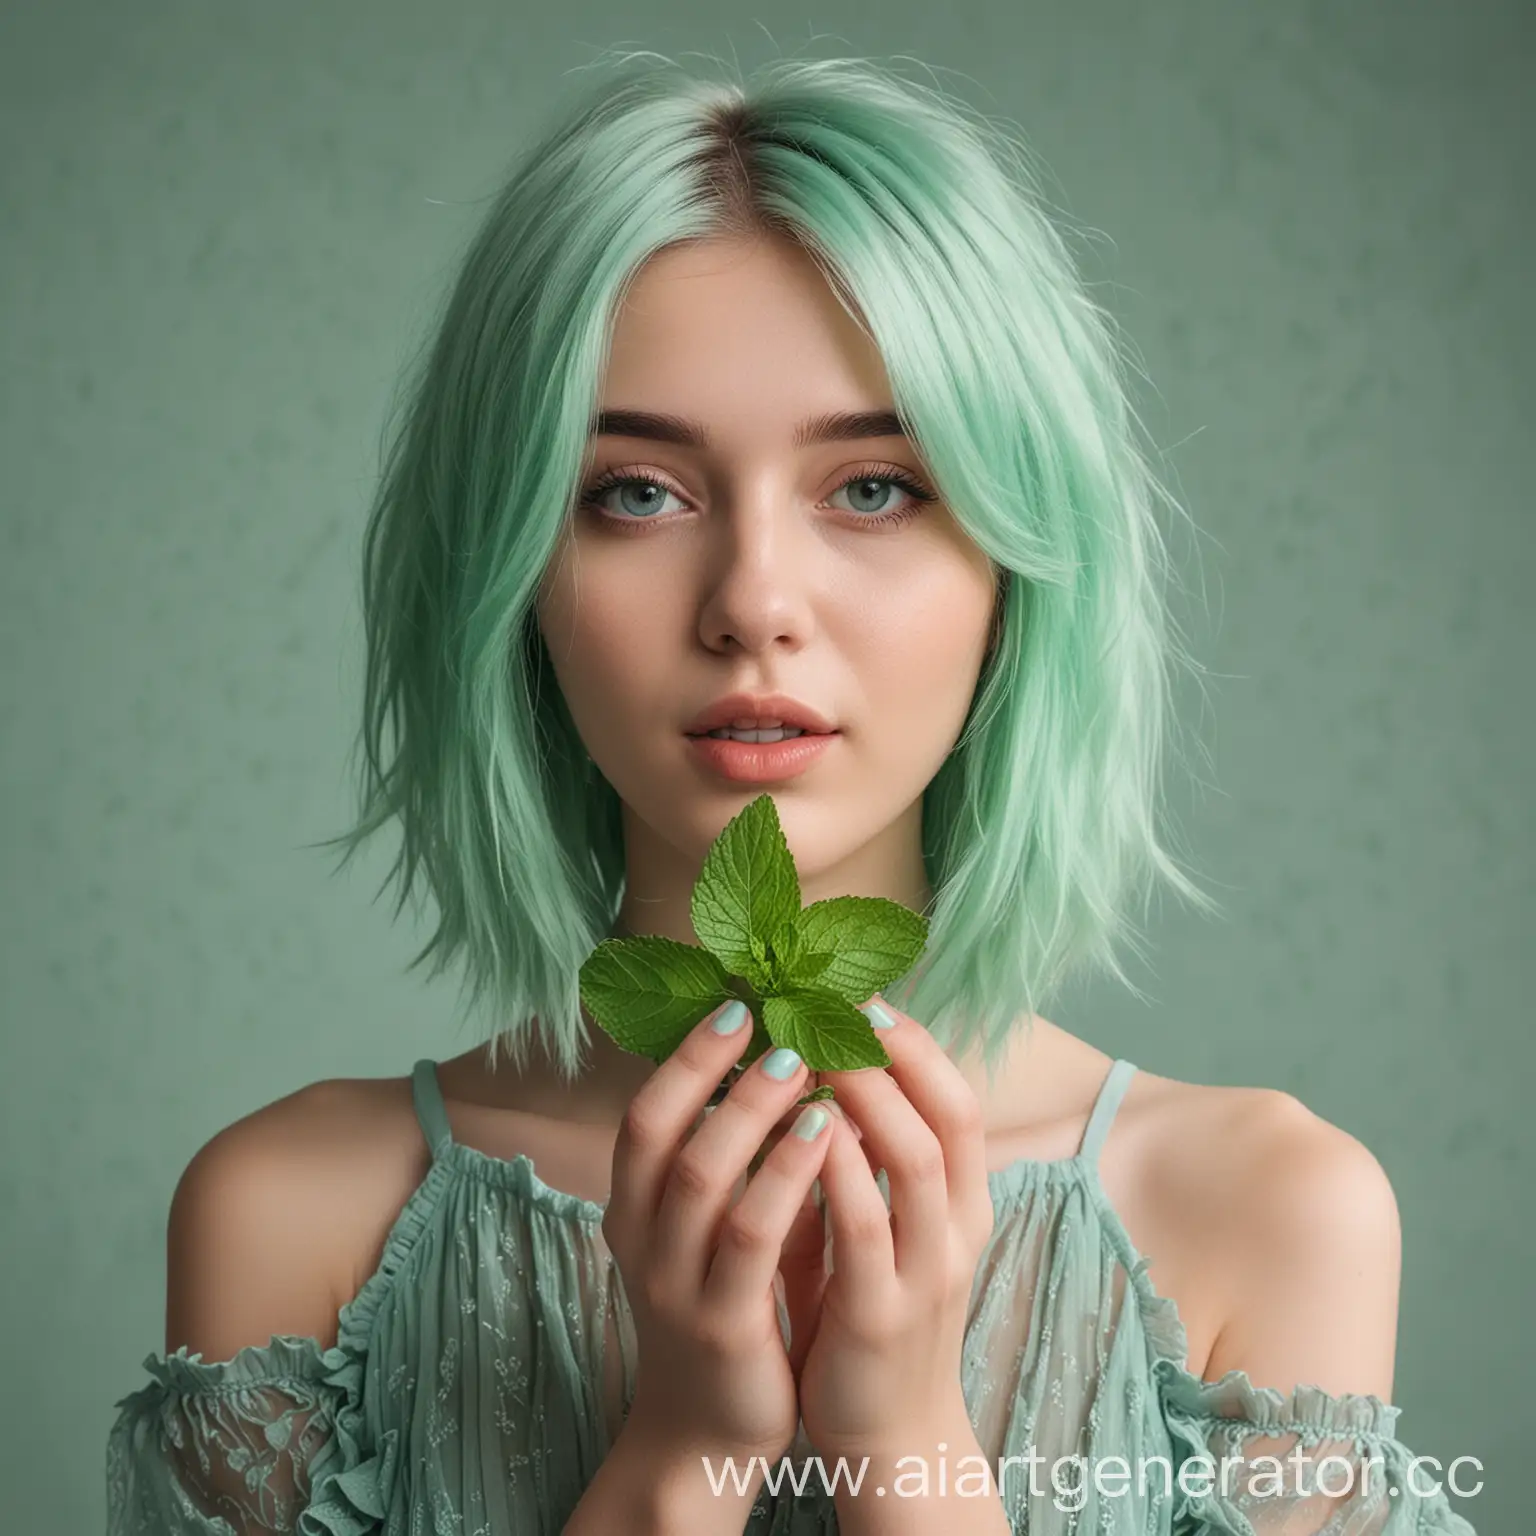 девушка модель 23 года красивая с волосом мятного цвета по пояс с мятой в руках
